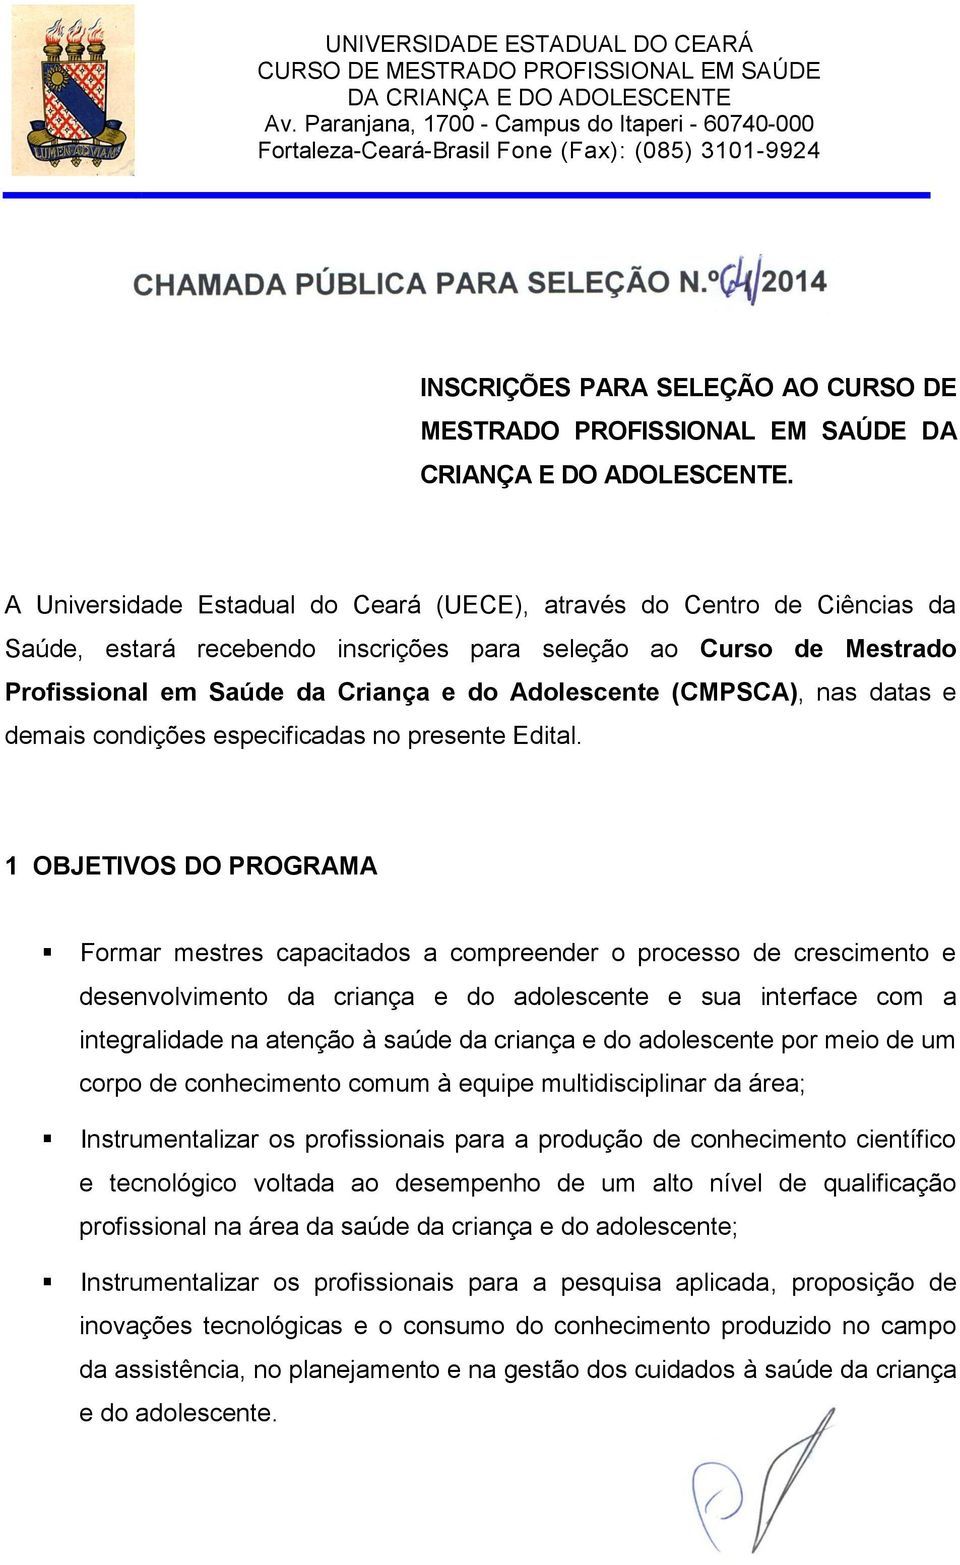 A Universidade Estadual do Ceará (UECE), através do Centro de Ciências da Saúde, estará recebendo inscrições para seleção ao Curso de Mestrado Profissional em Saúde da Criança e do Adolescente